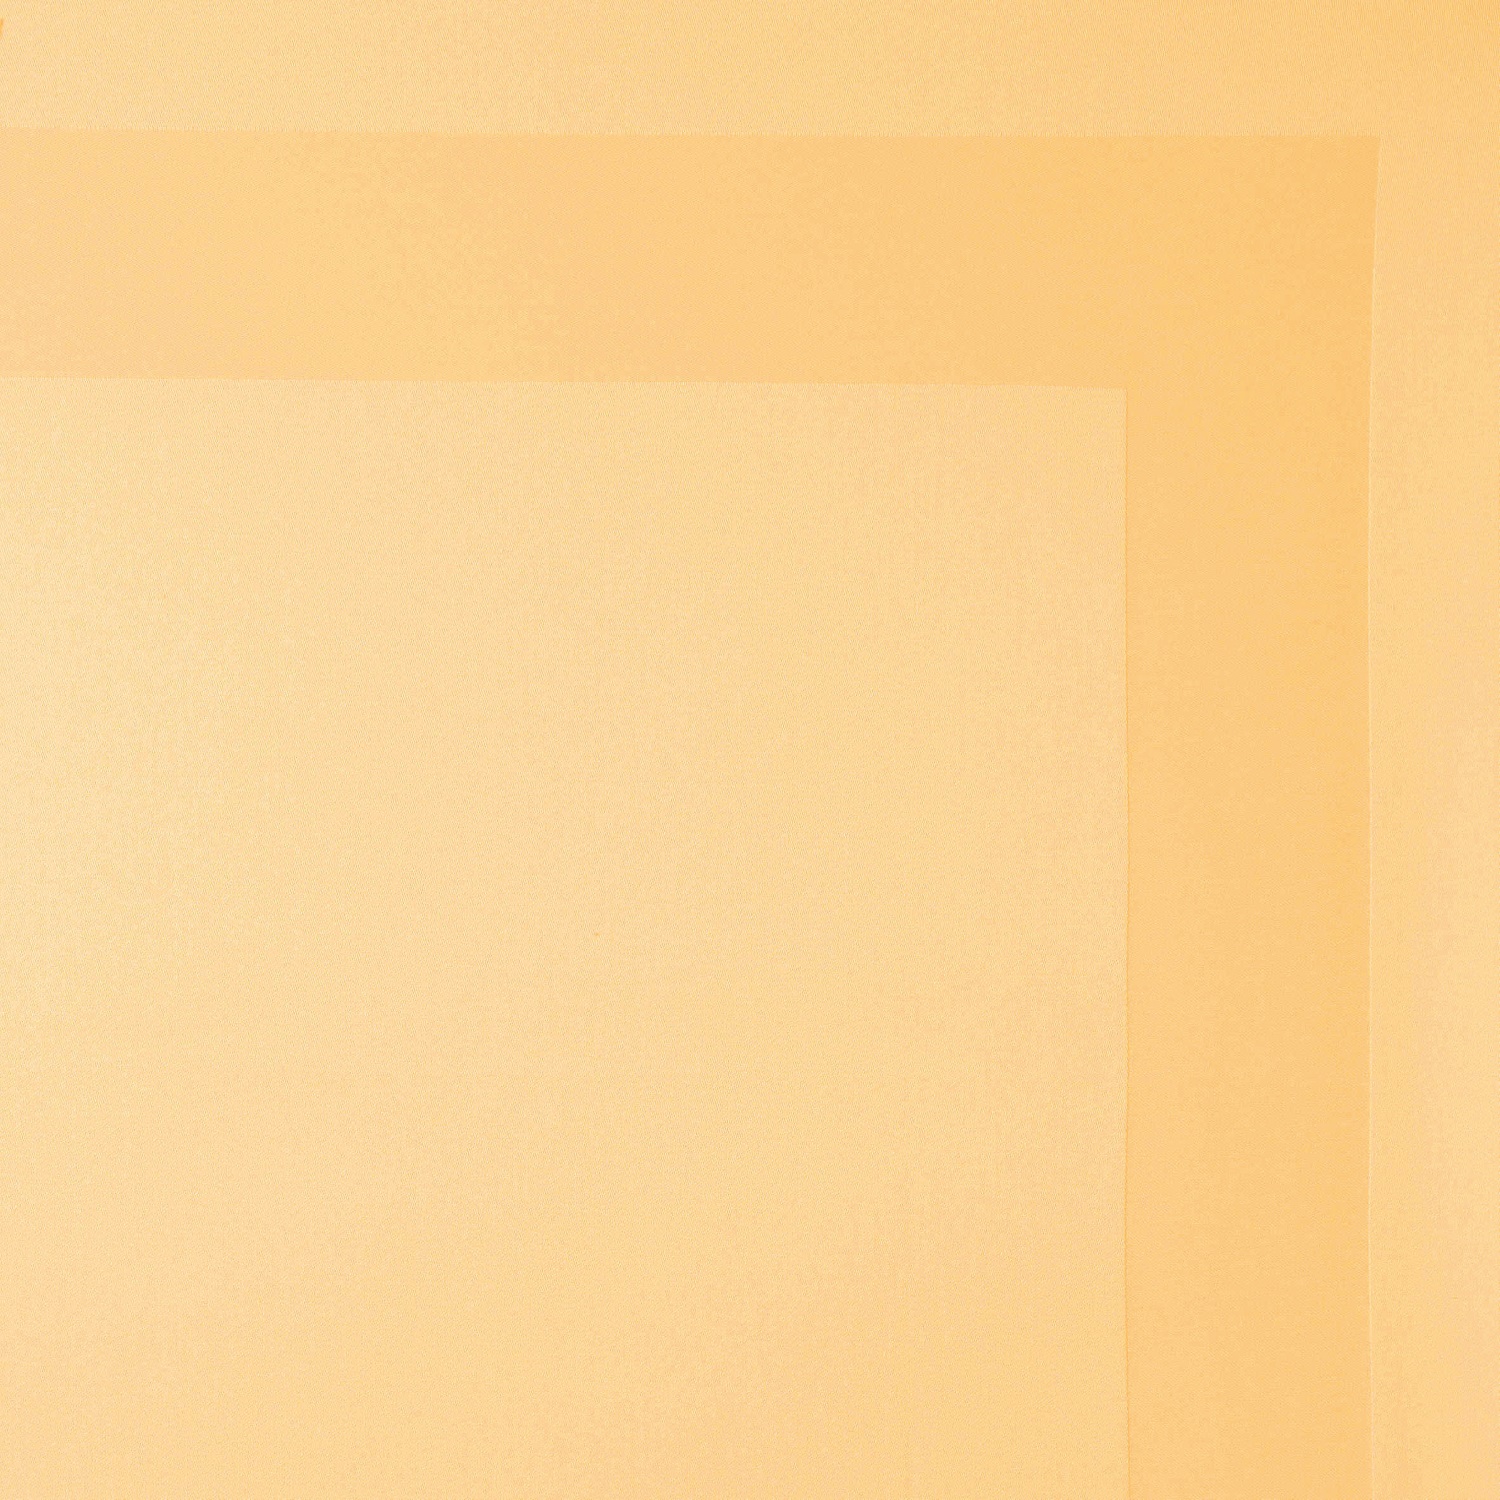 Damasttischdecke mit Atlaskante gold 130x170cm 